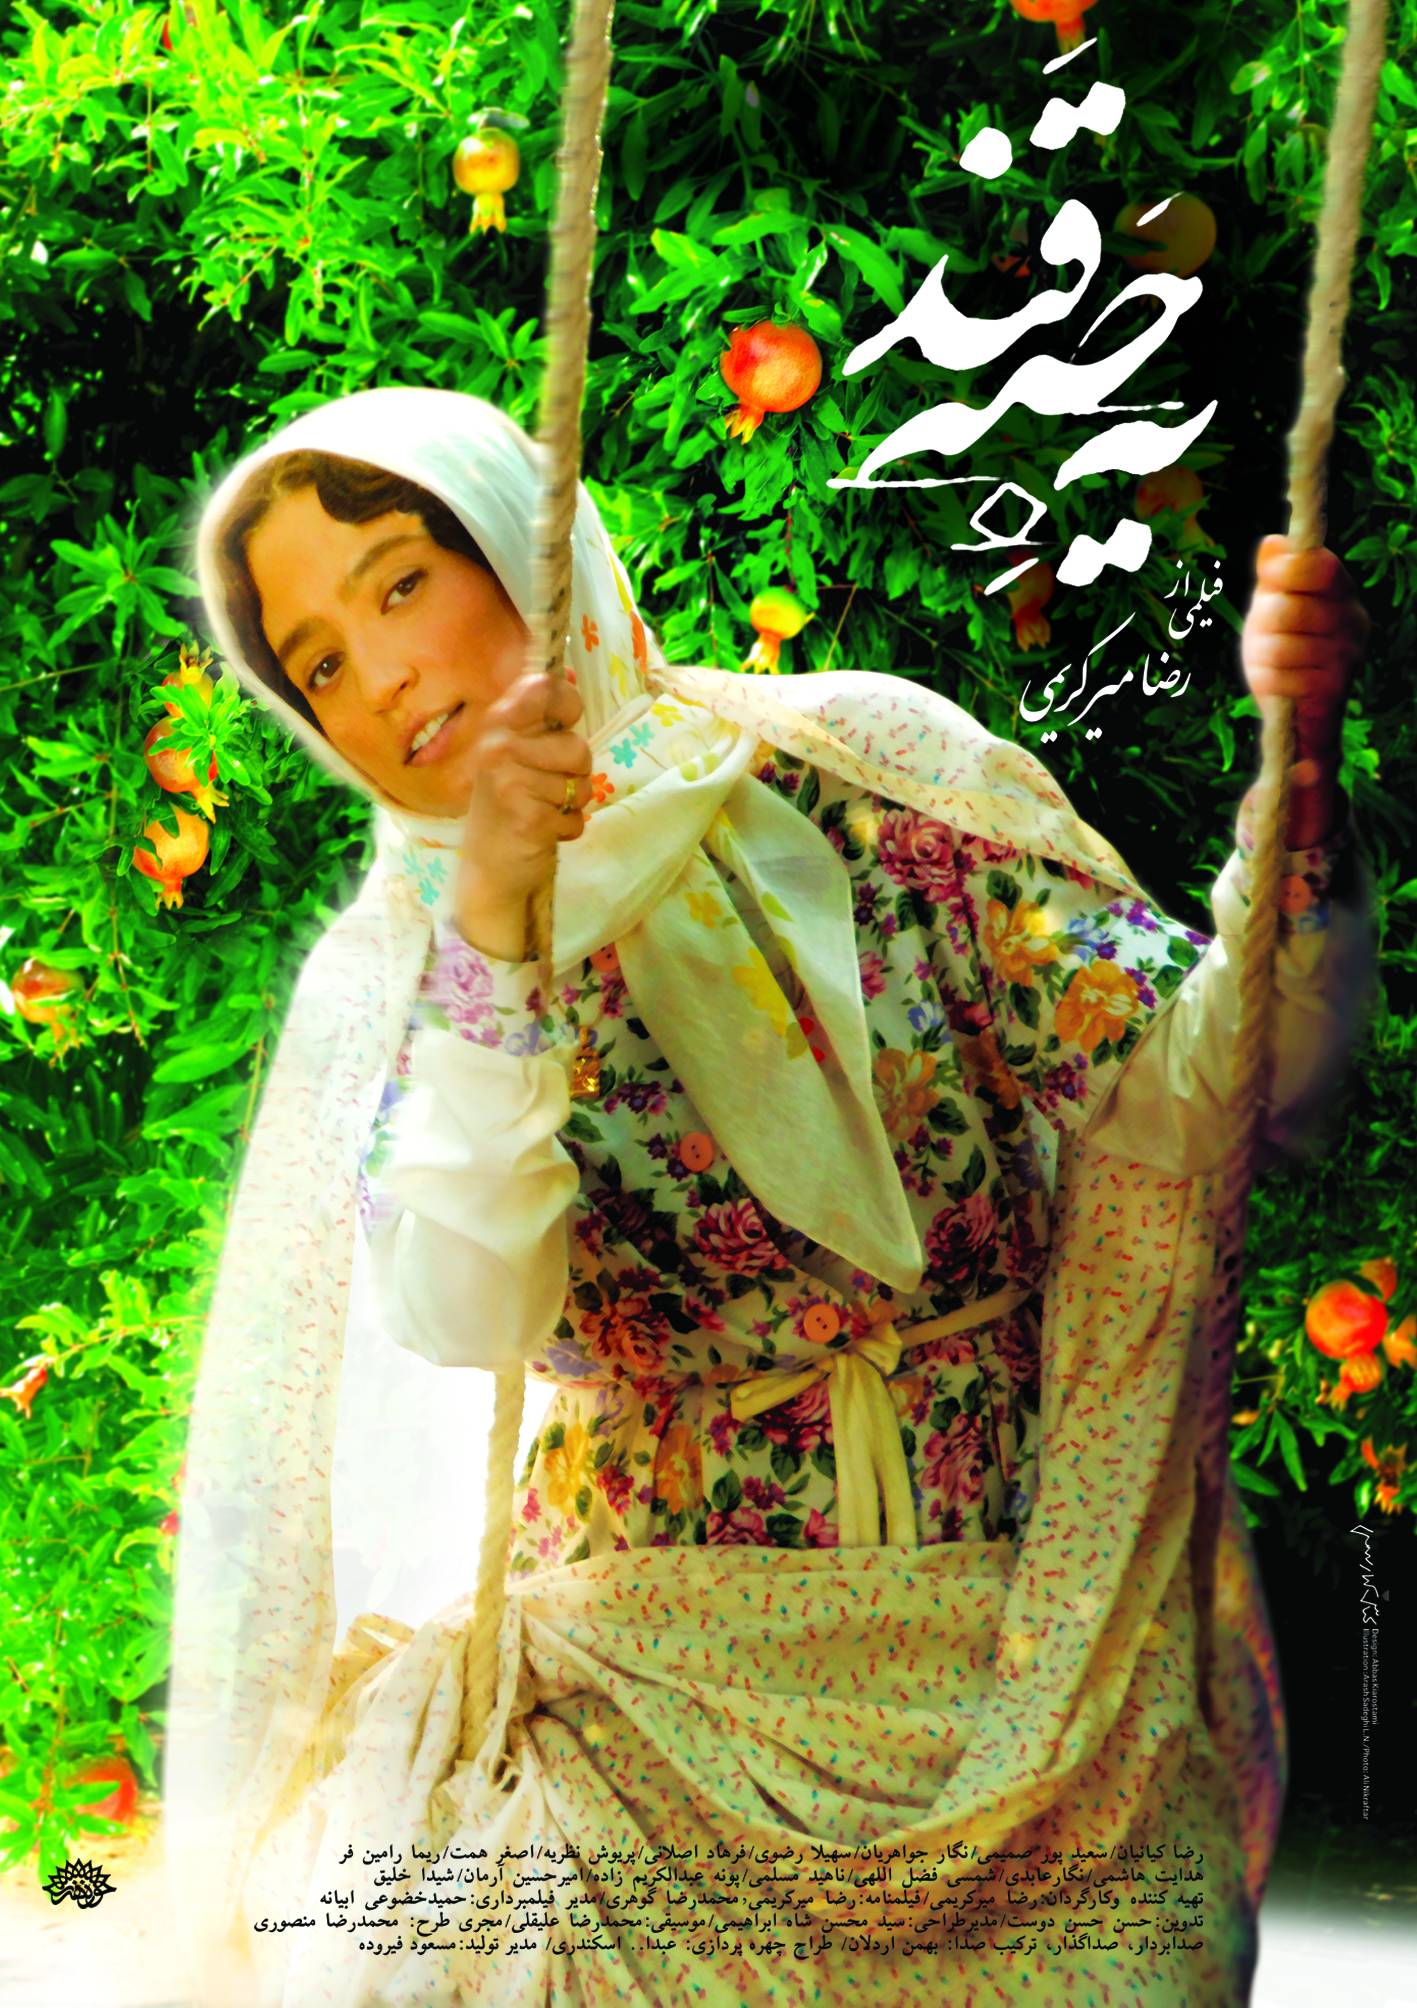 پوستر فیلم سینمایی یه حبه قند به کارگردانی سیدرضا میر کریمی